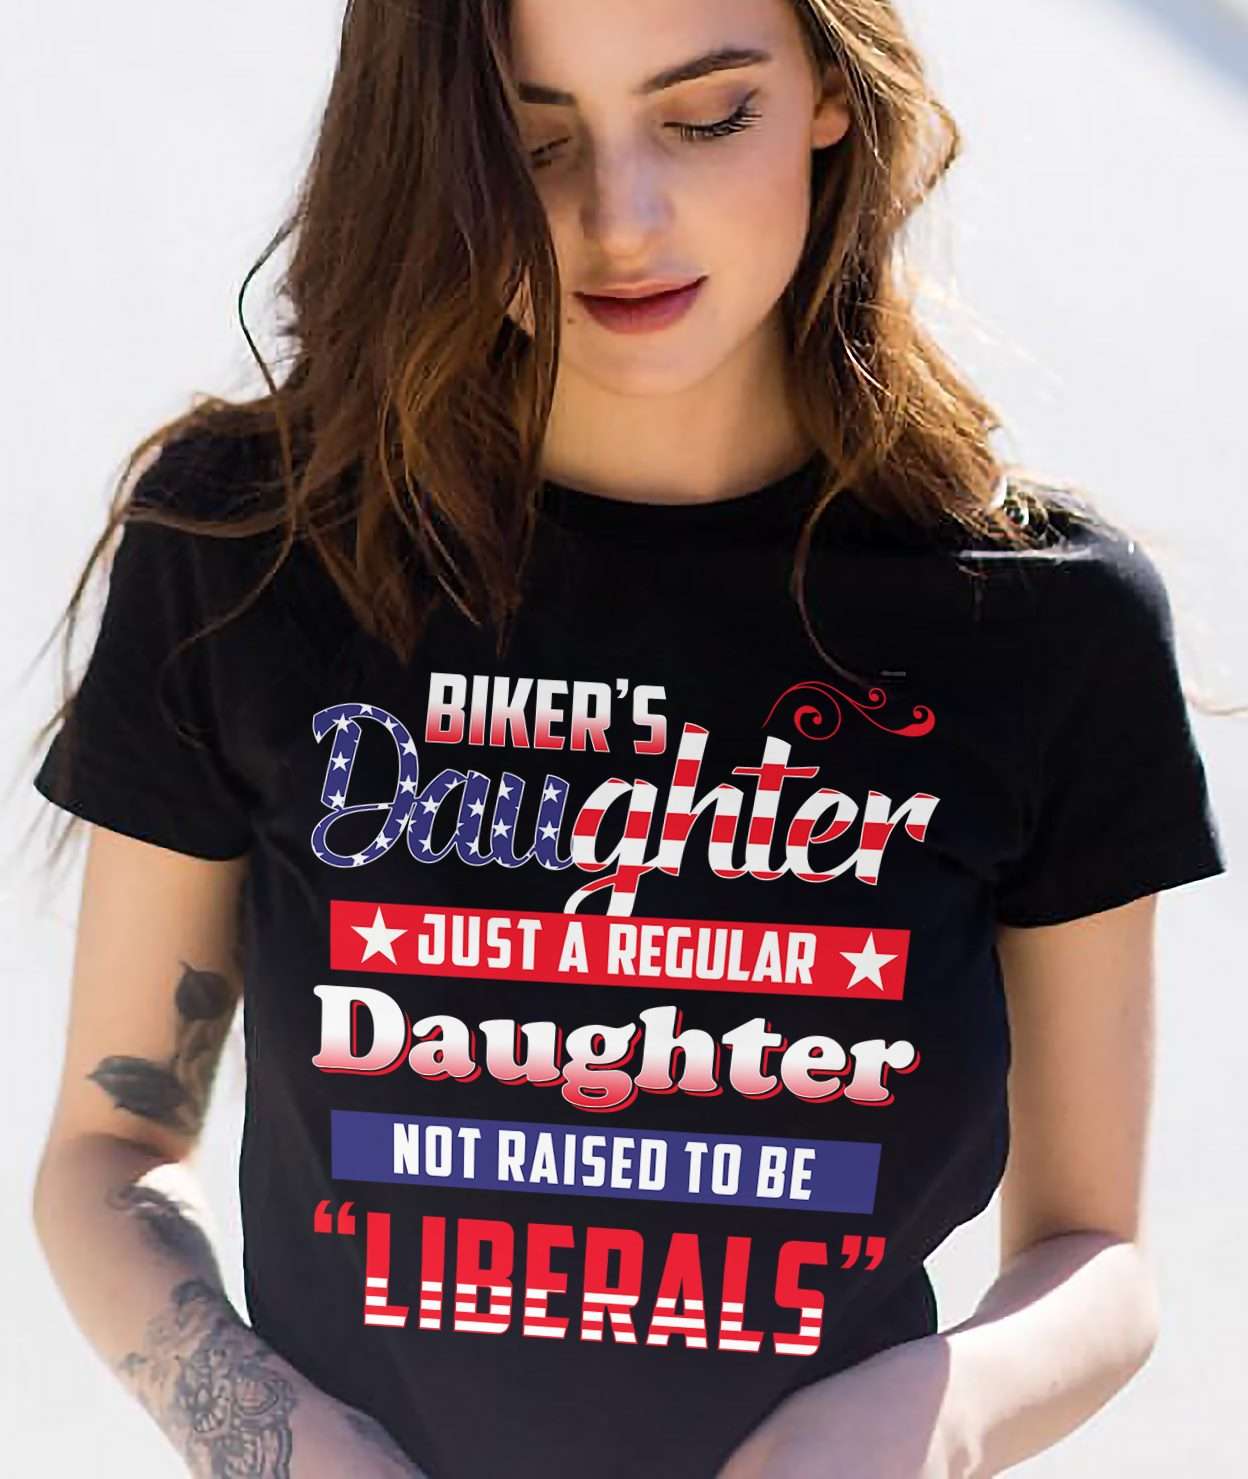 Biker's daughter just a regular daughter not raise to be liberals